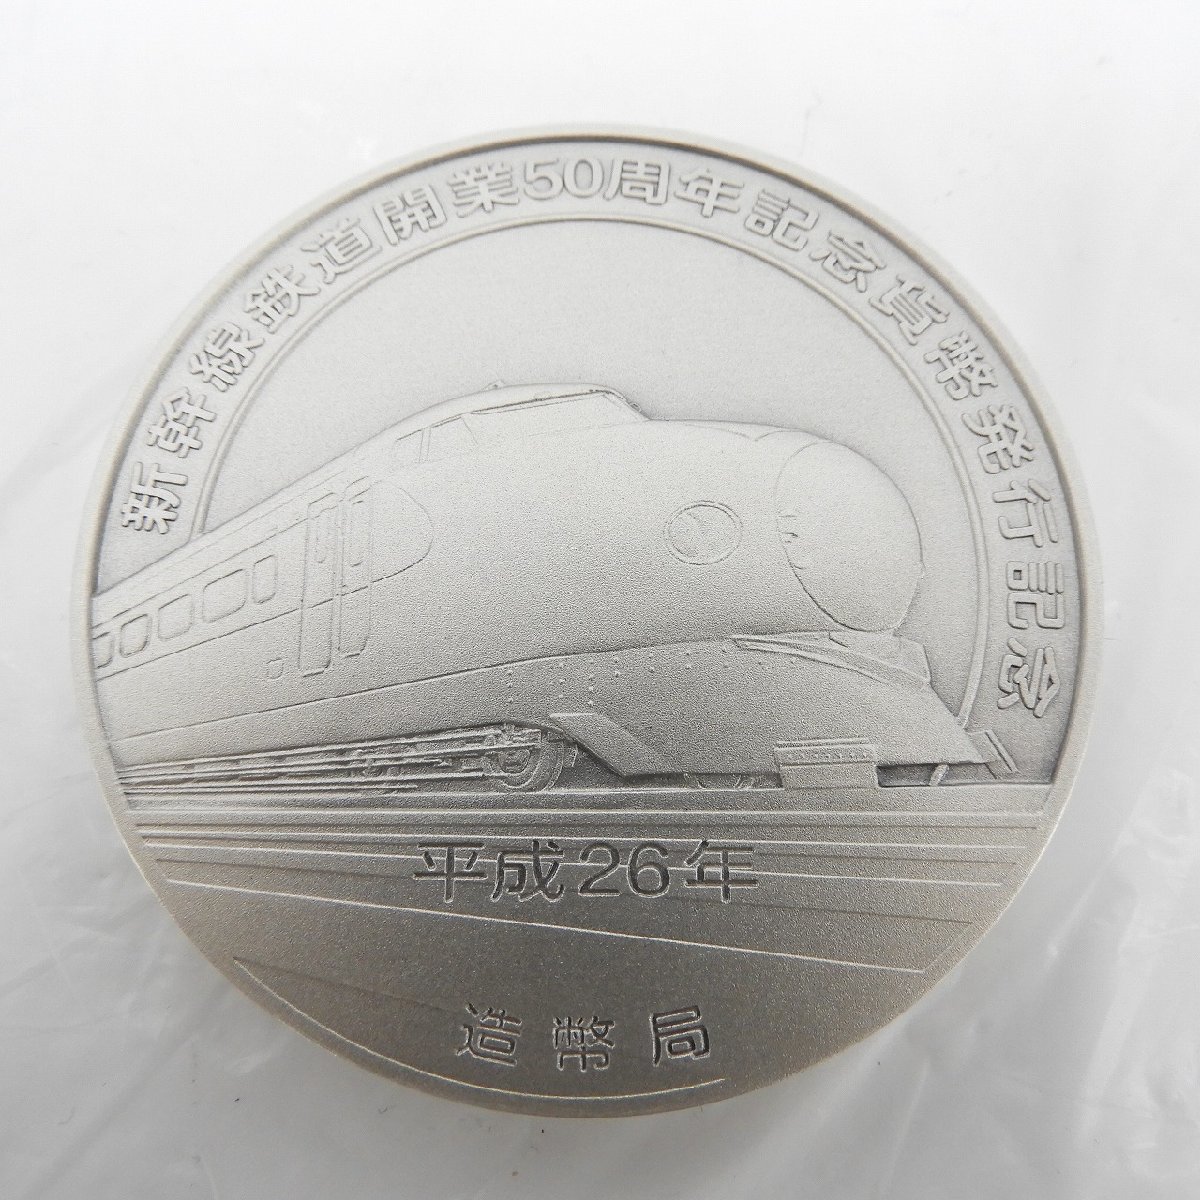 【記念メダル】新幹線鉄道開業50周年記念貨幣発行記念メダル 約164.8g 箱付 11481599 0122_画像3